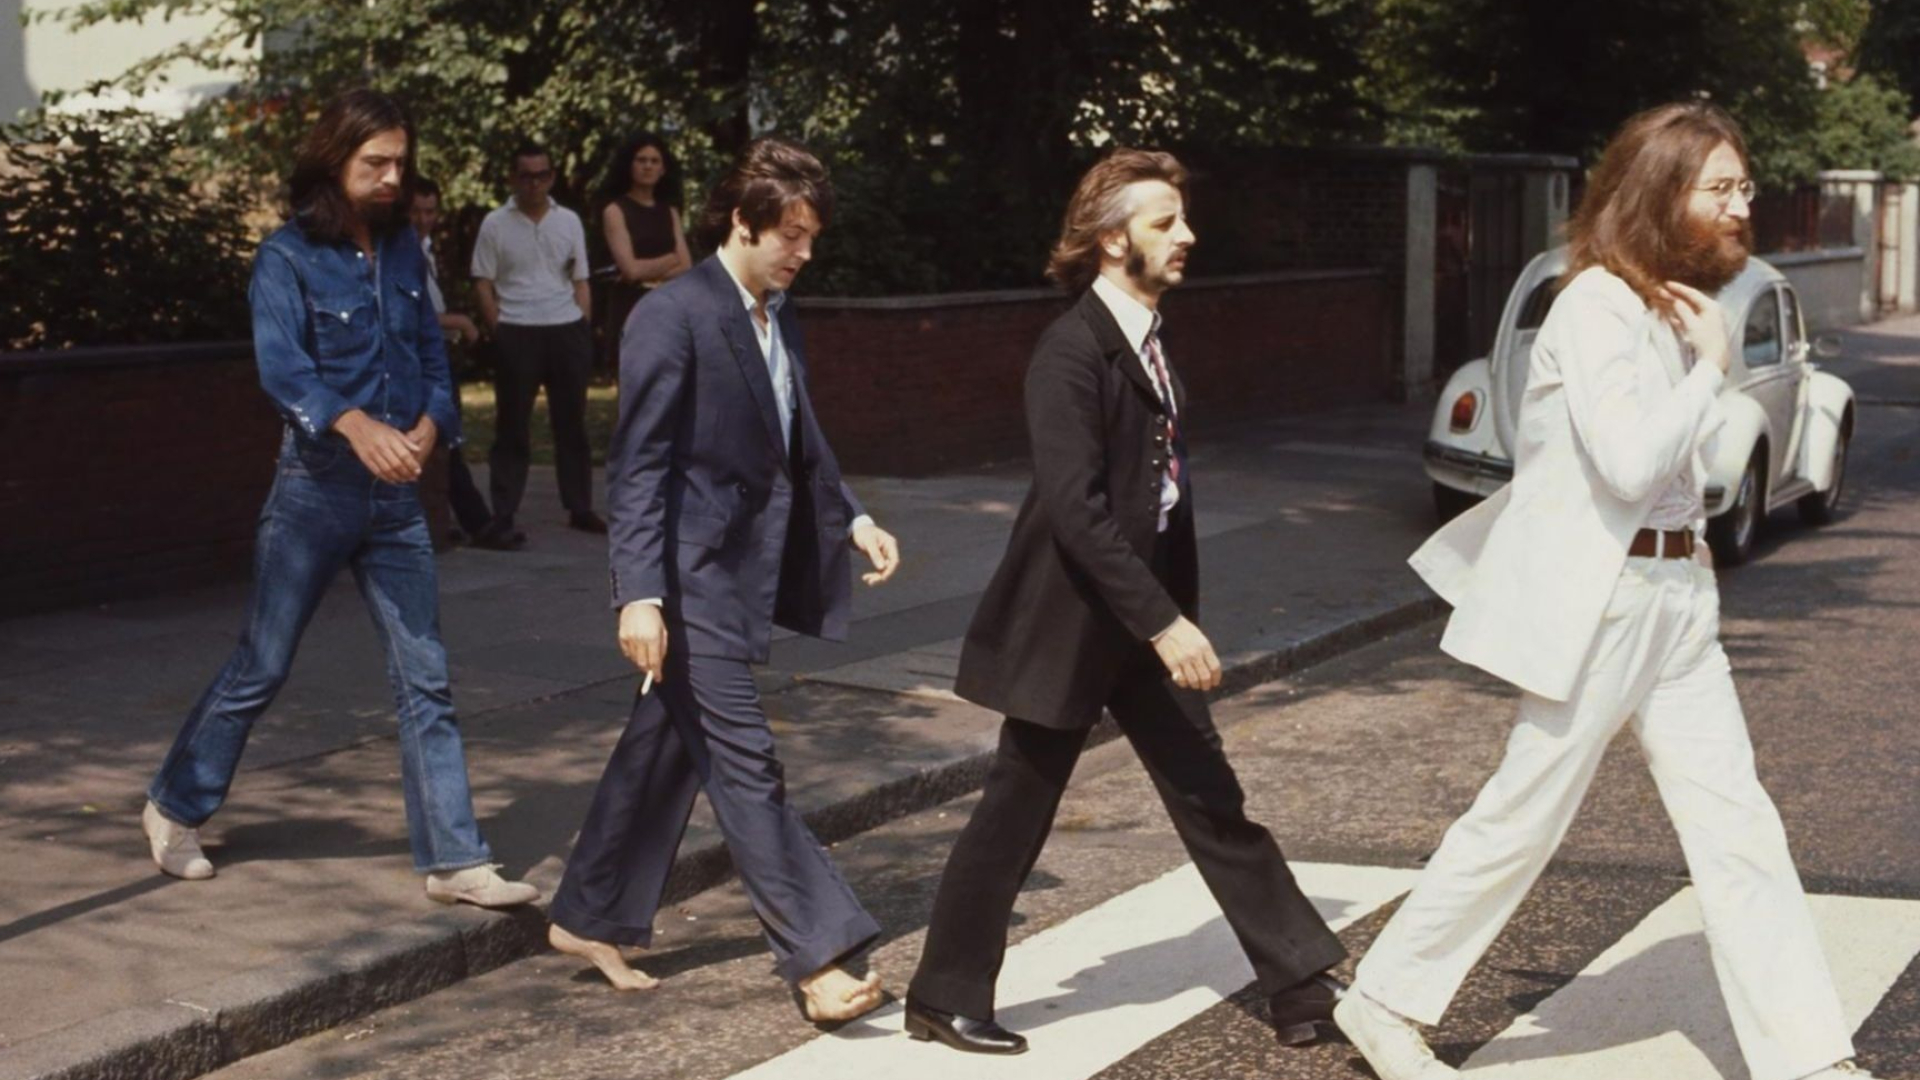 1920x1080 The Beatles, Paul McCartney, John Lennon, George Harrison, Ringo Starr, musician, walking, Abbey Road, crosswalk, band | Wallpaper